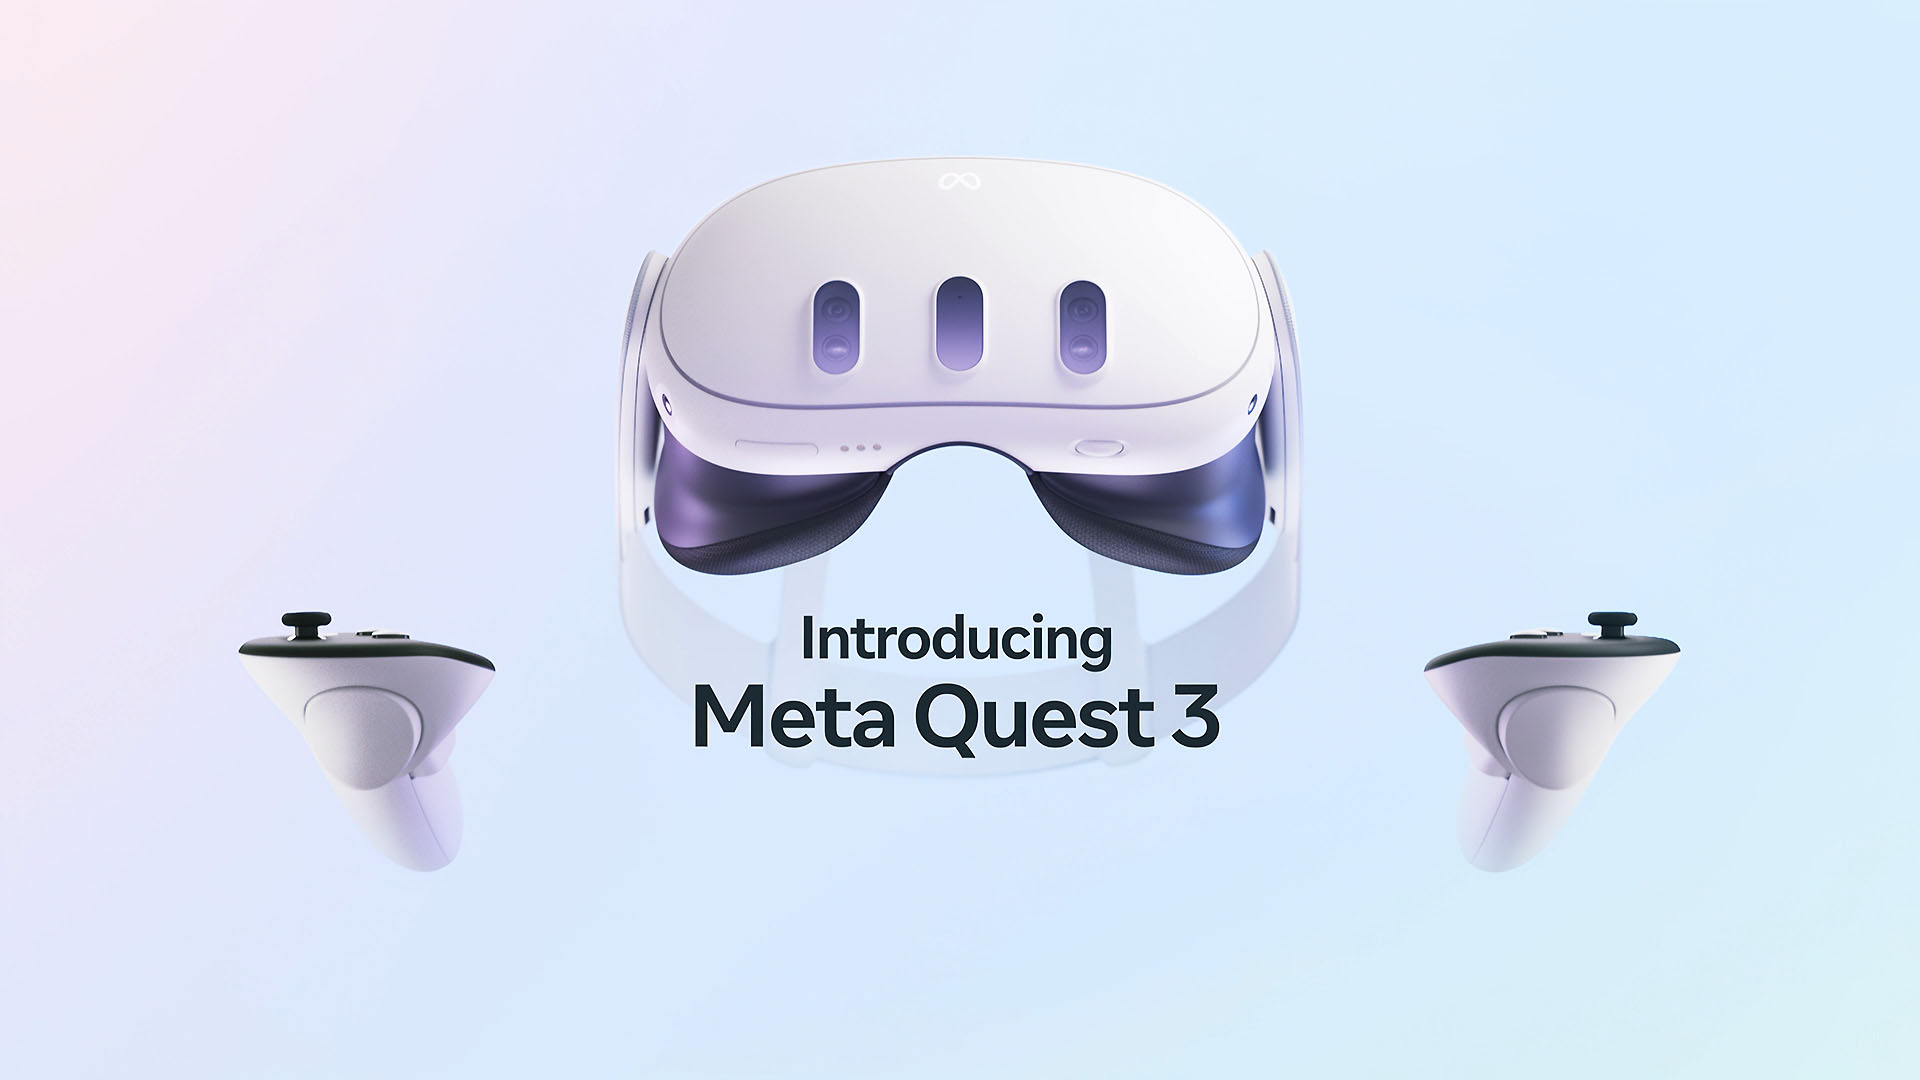 【新聞照片1】meta 今年秋季將推出新一代頭戴式裝置 Meta Quest 3，提供 Vr 及 Mr 體驗